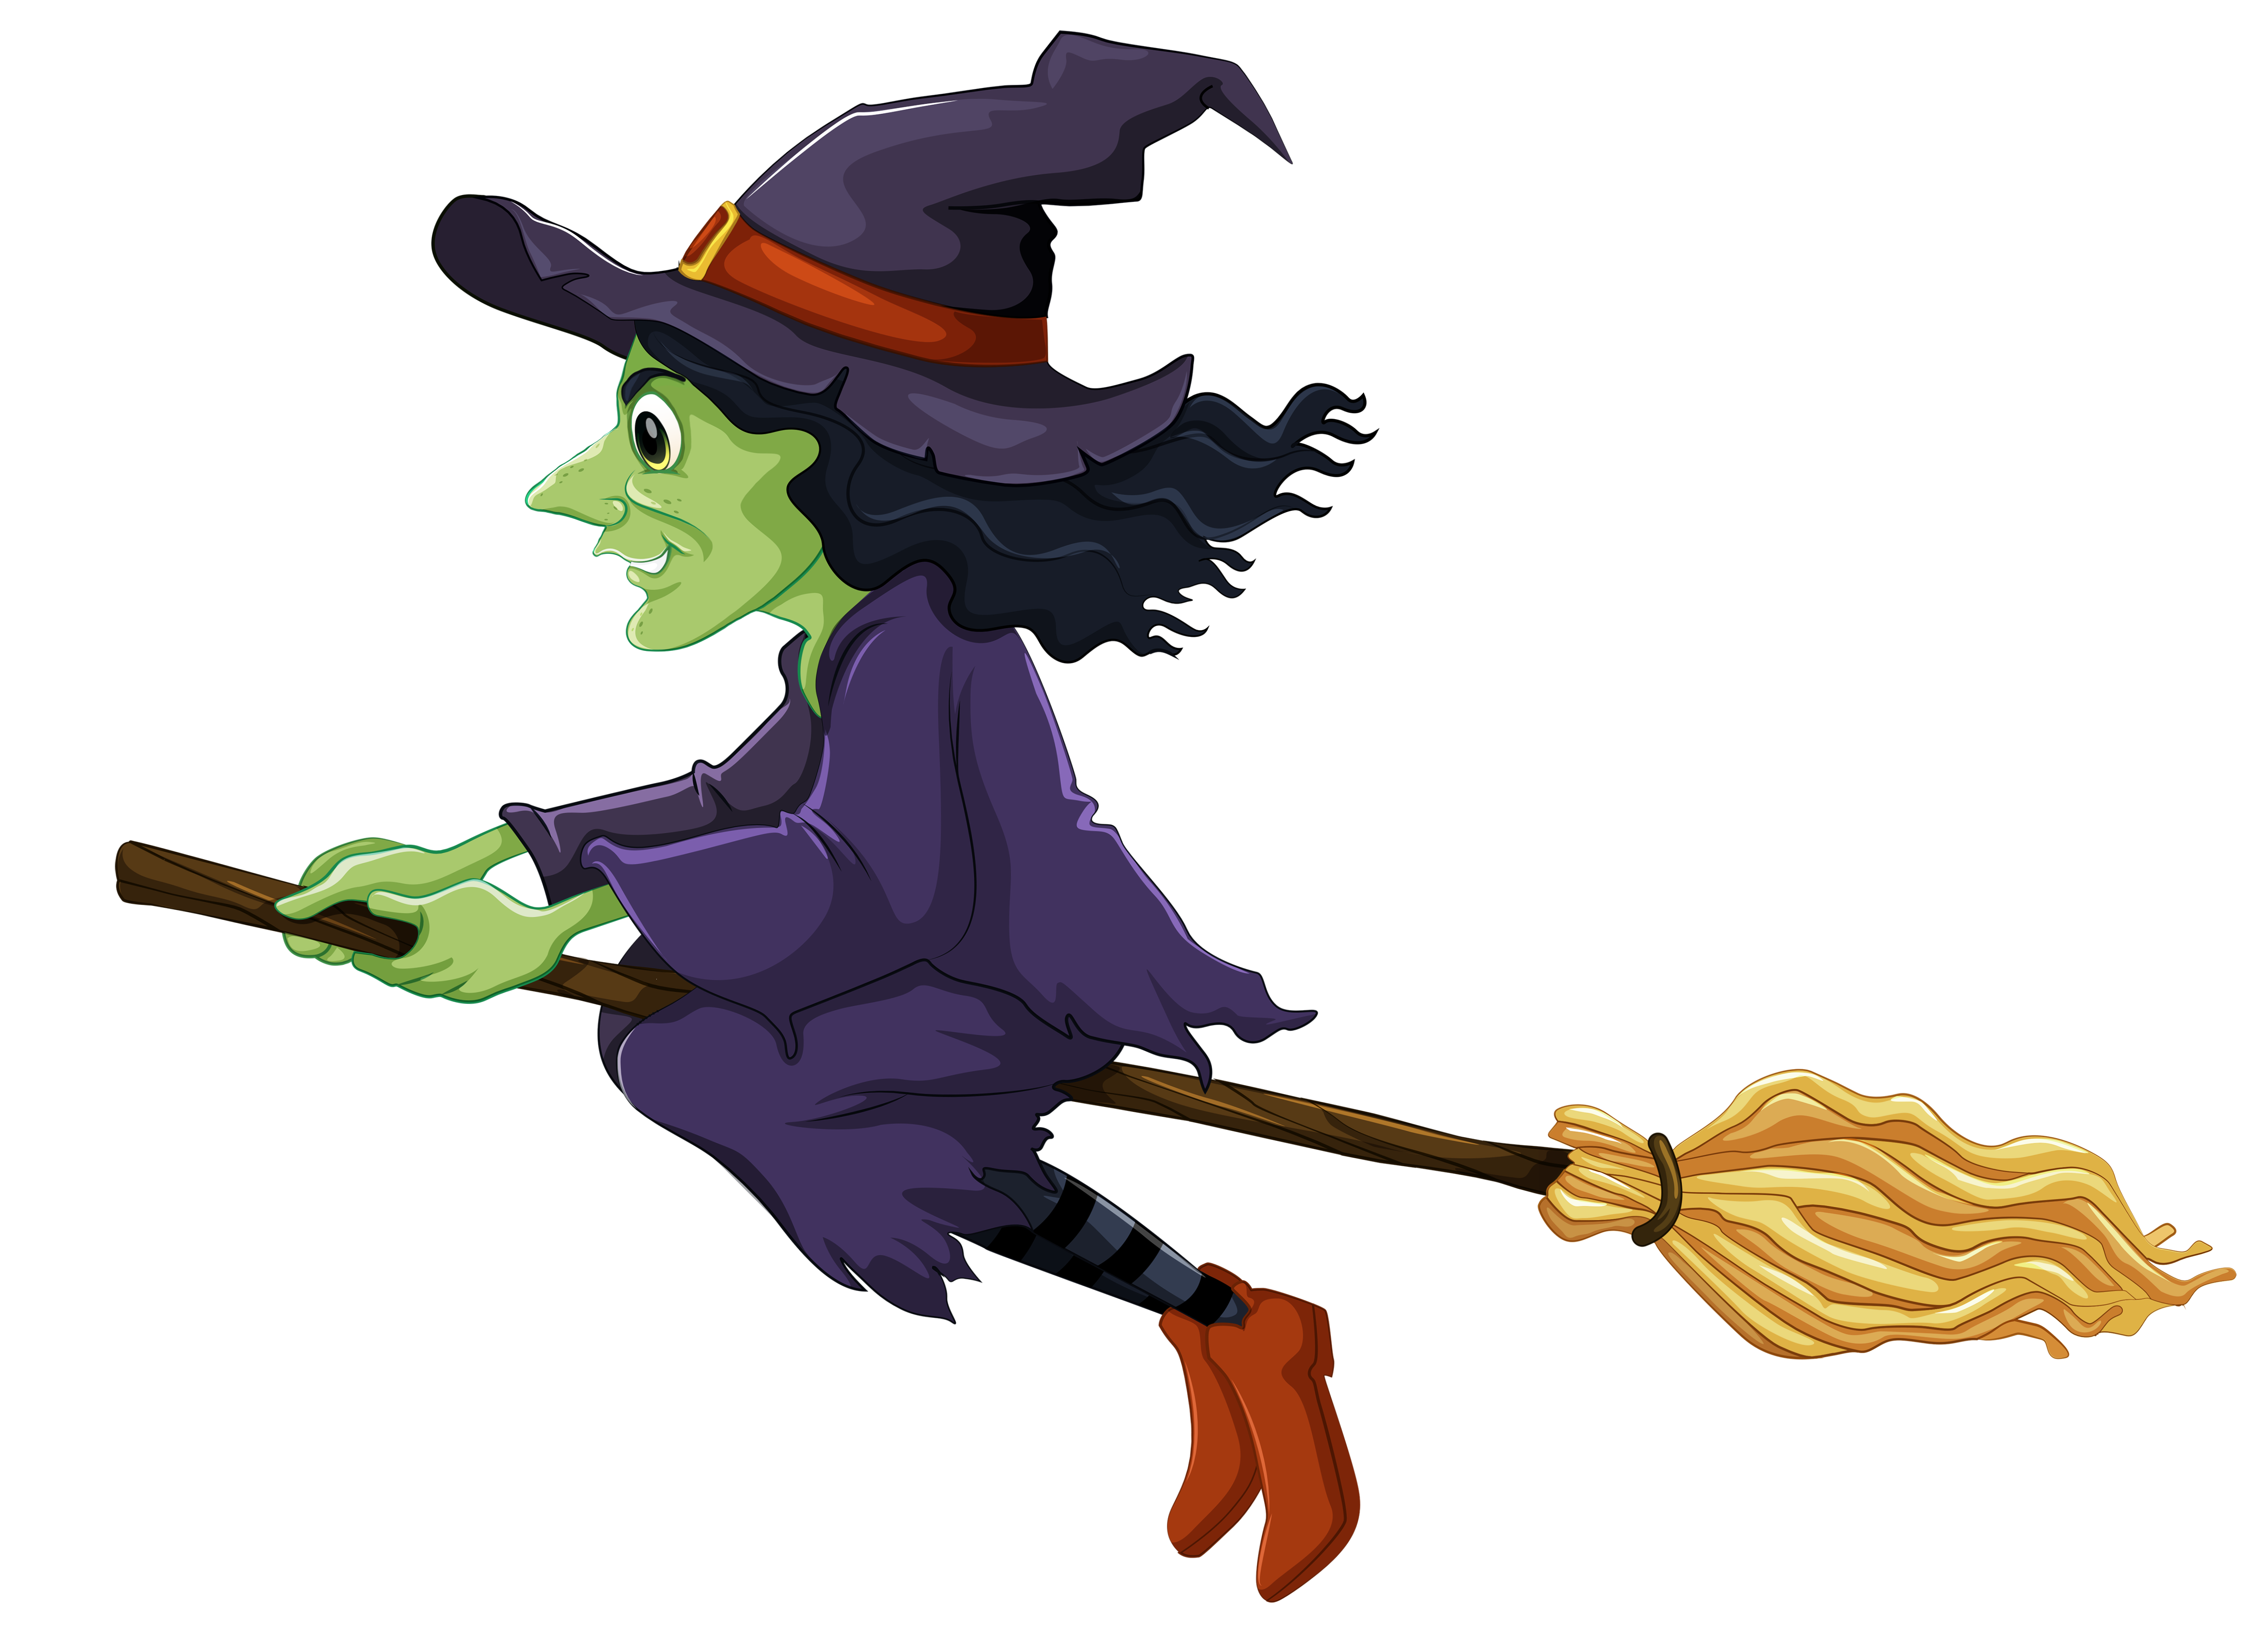 Cute Witch